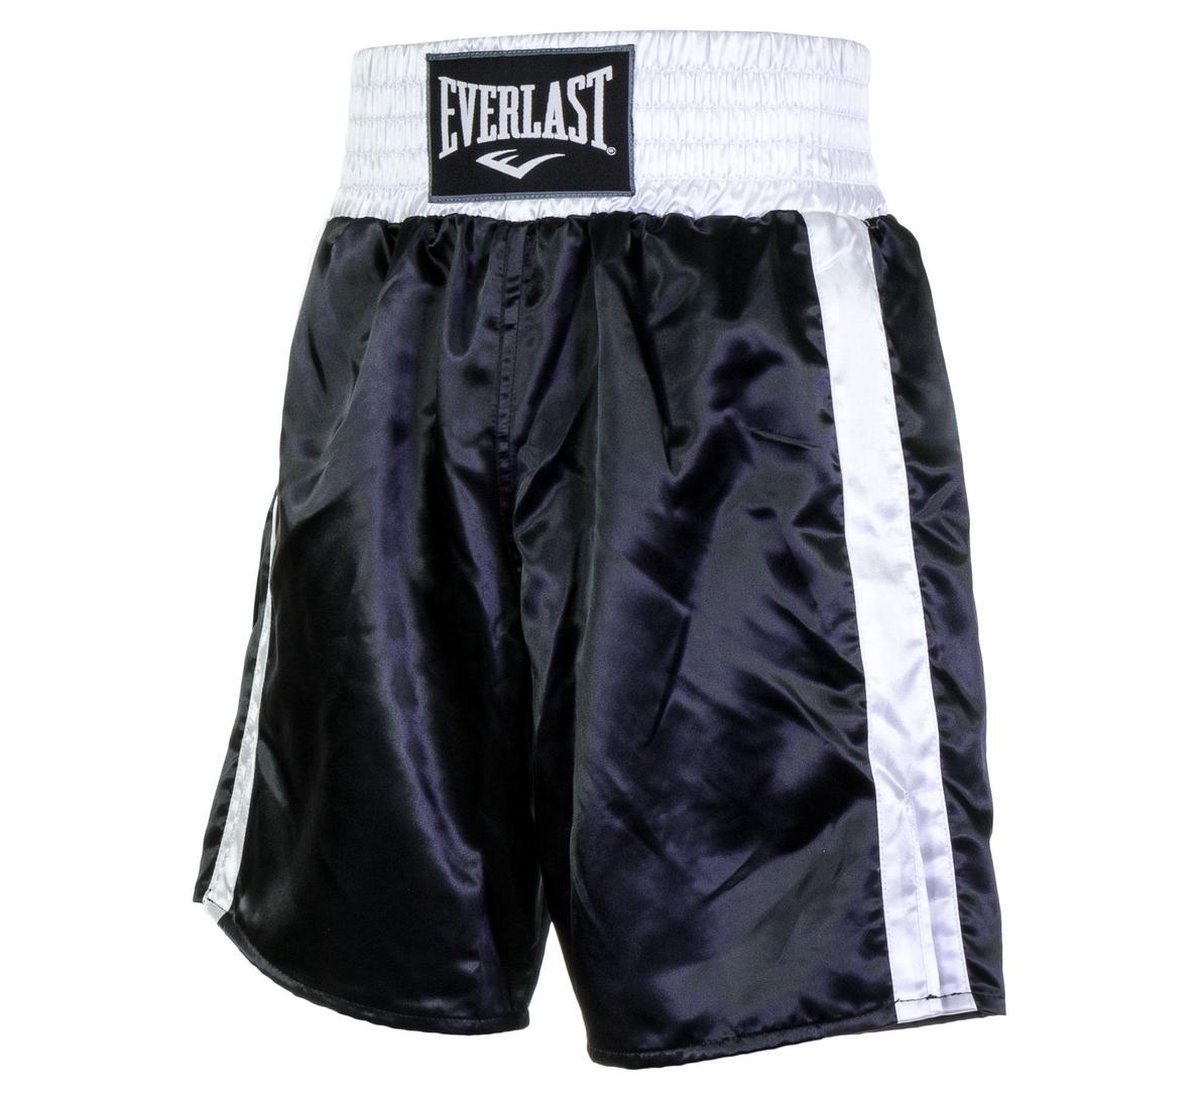 Everlast Pro Boxing Short Boksbroek - Maat M - Unisex - zwart/wit | bol.com